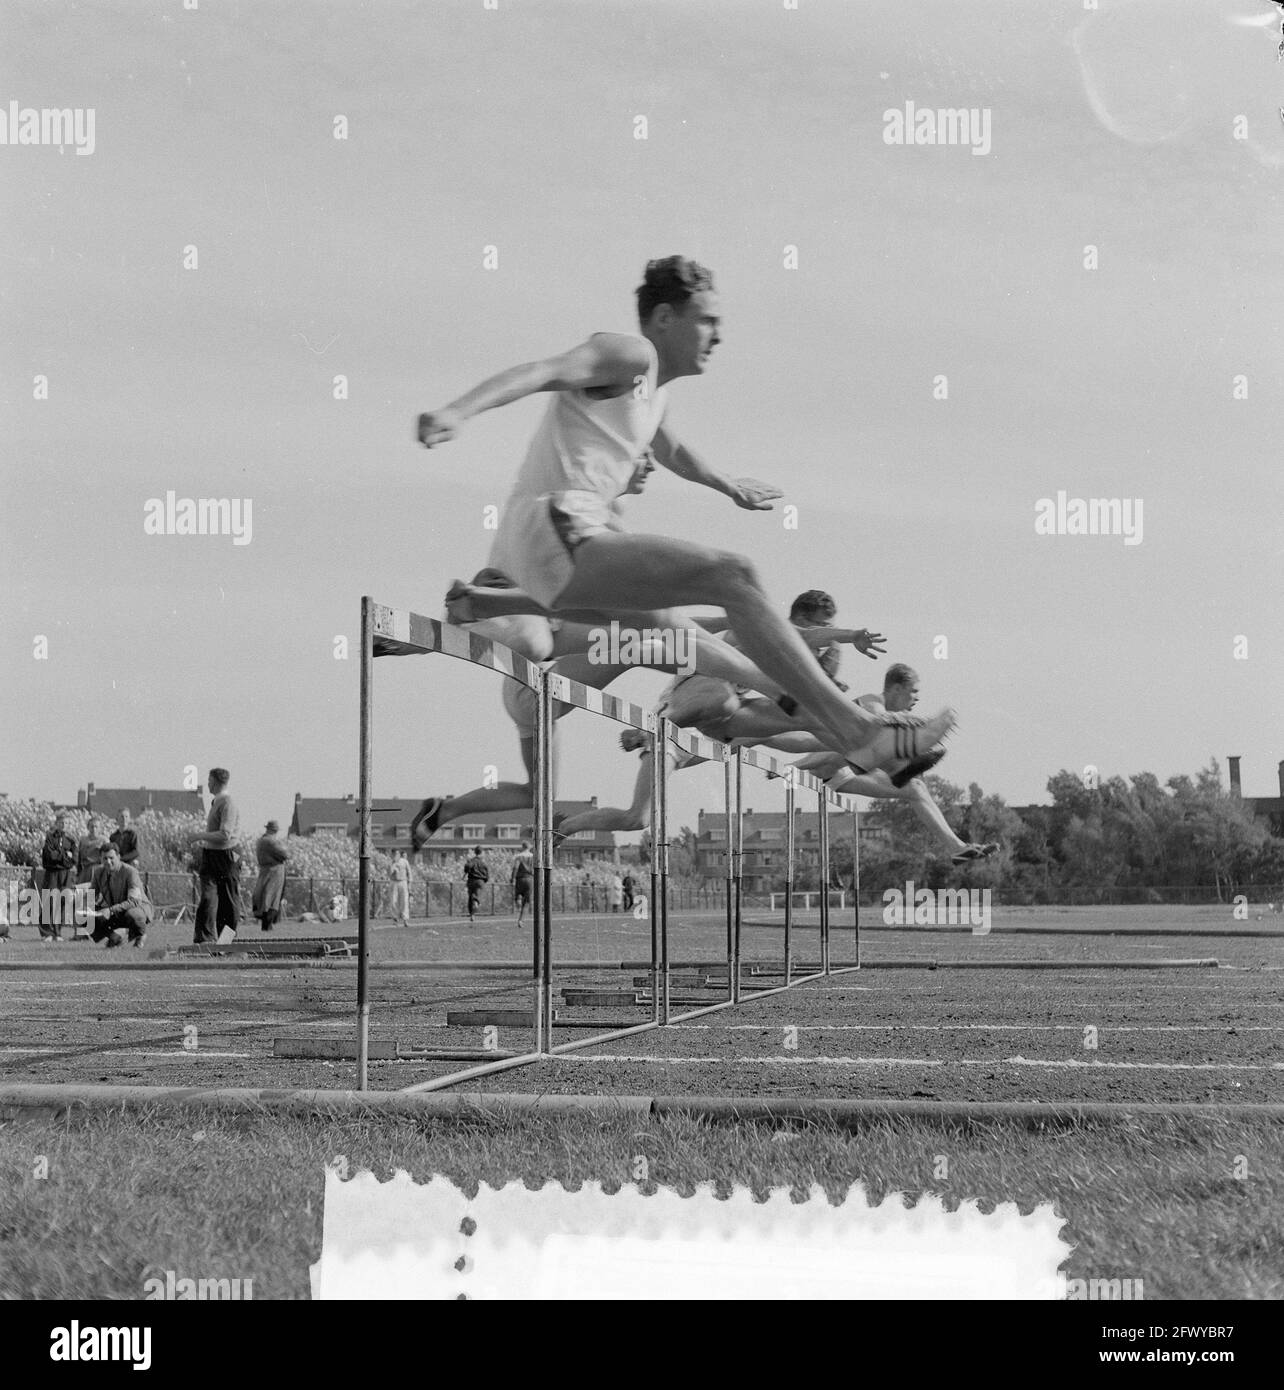 Athlétisme Prins Hendrikbeker finale de la Haye 110 haies, 11 septembre 1955, ATLETICS, finales, Haies, pays-Bas, Agence de presse du 20e siècle ph Banque D'Images